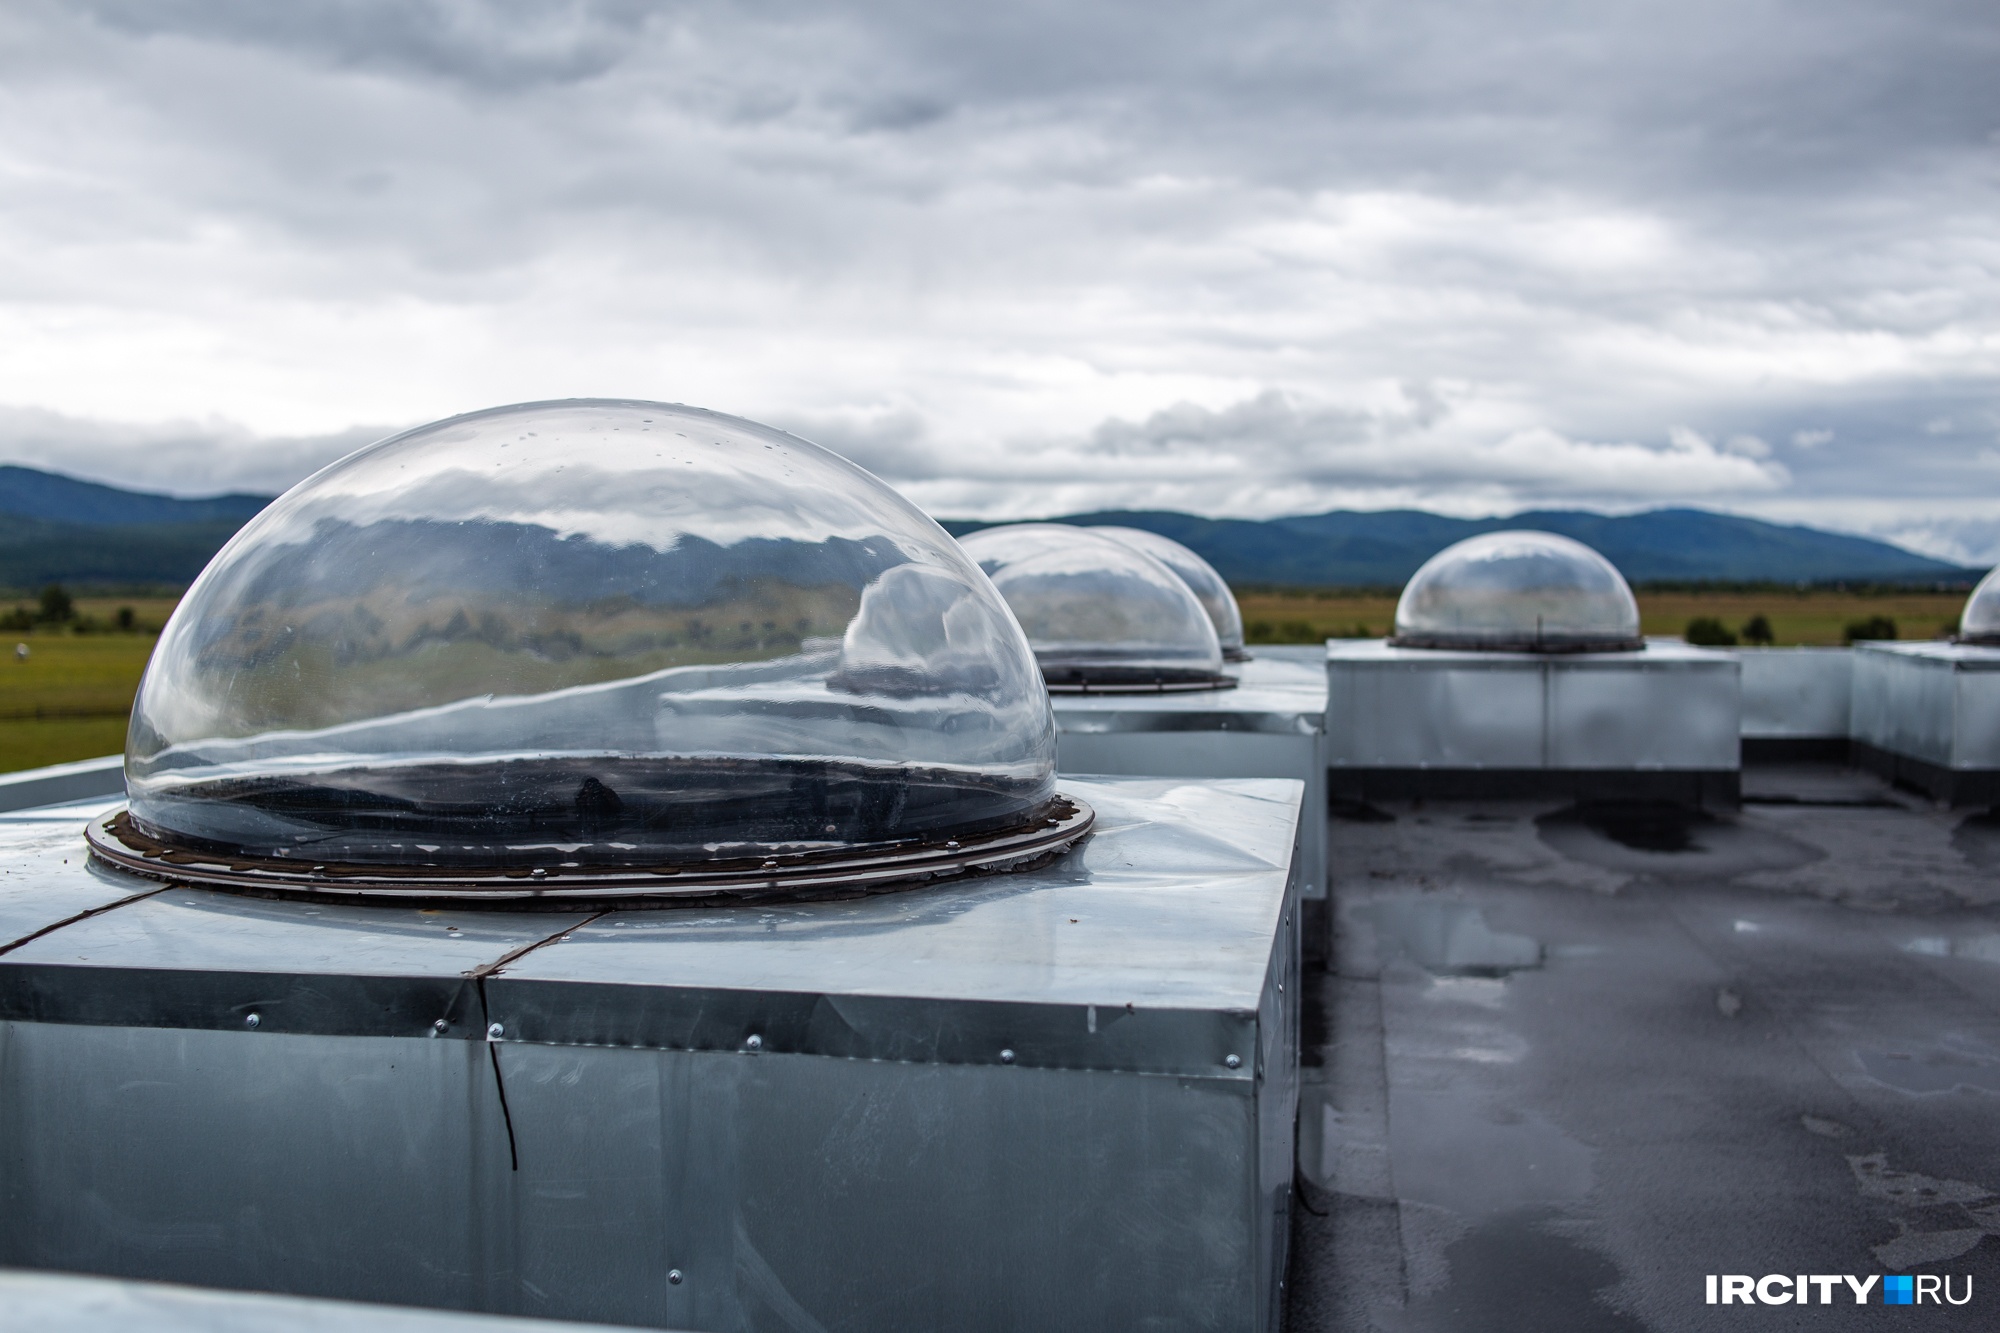 Всего на крыше техздания установлено 10 куполов, два из них гостевые — любой исследователь может привезти сюда свое оборудование и провести наблюдения